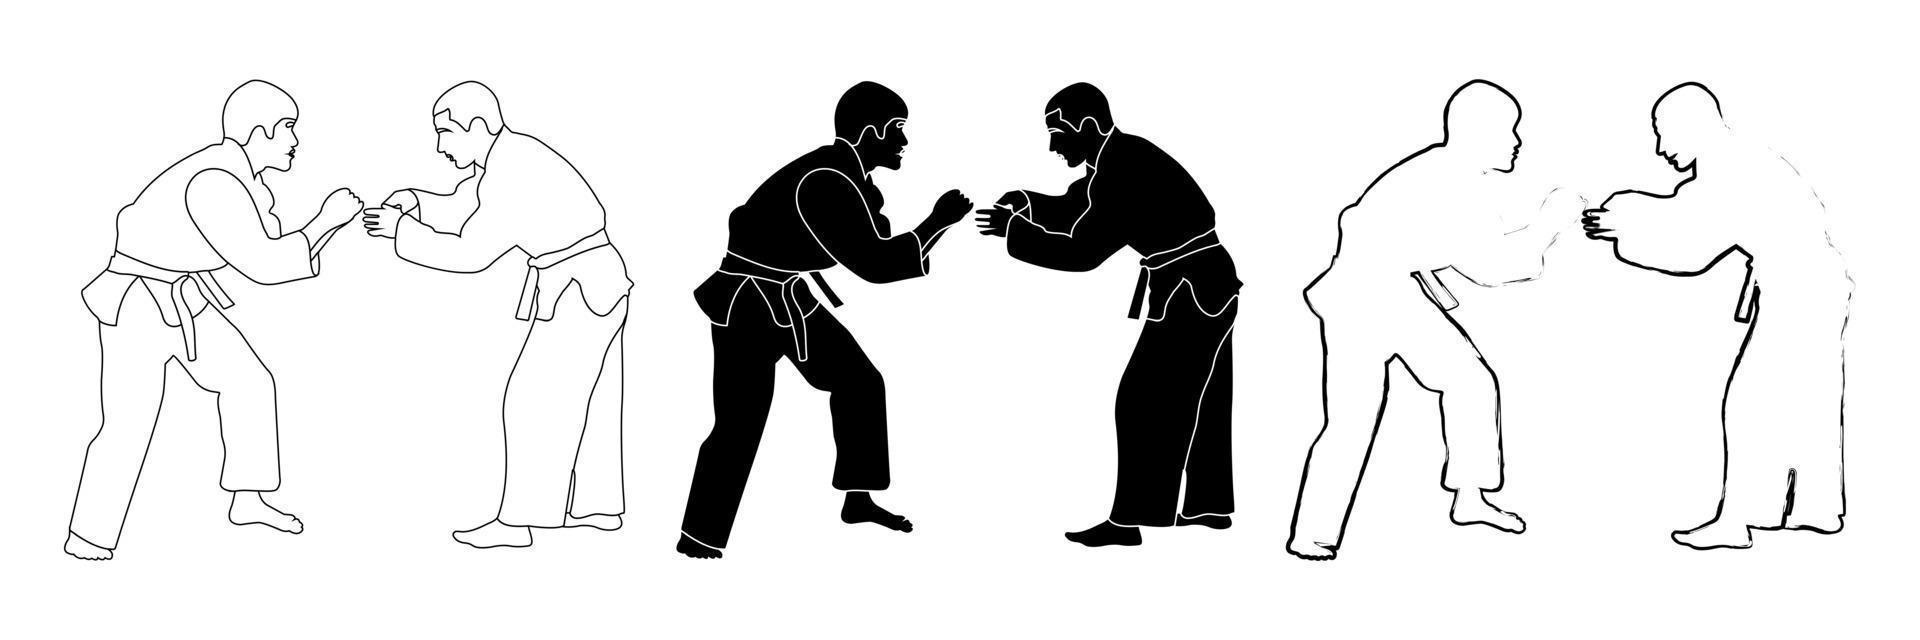 schets van een zwart-wit silhouet van een judoka-atleet in een duel, vechten. judo. vechtsporten. vector